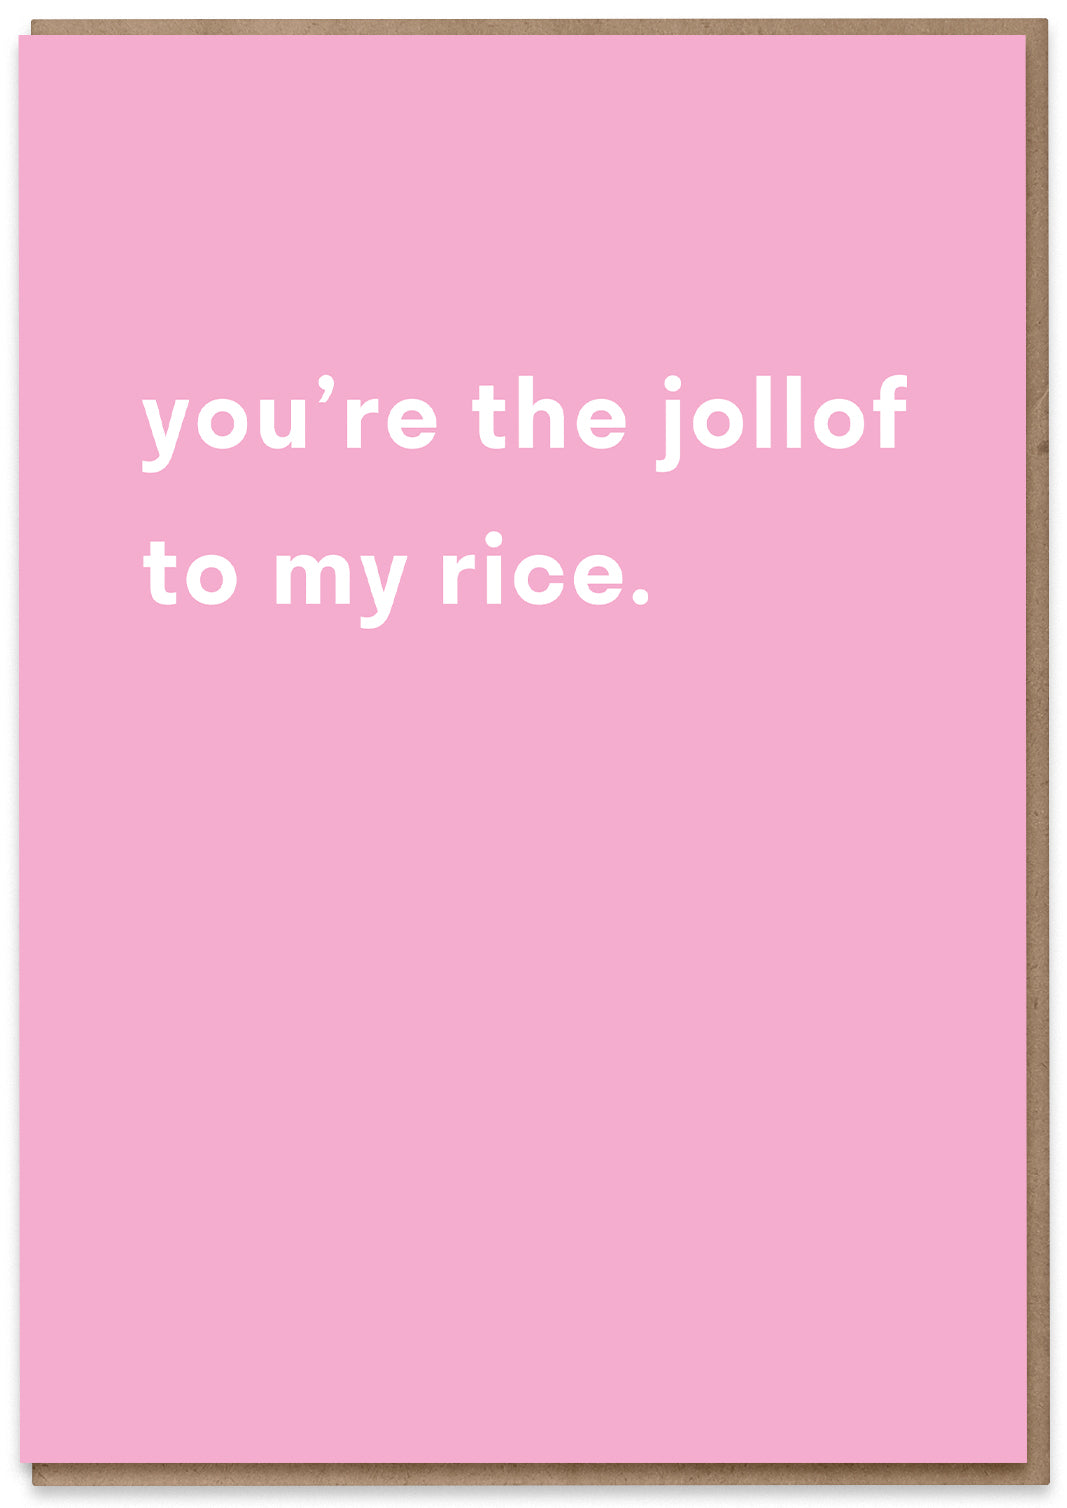 The Jollof to my Rice